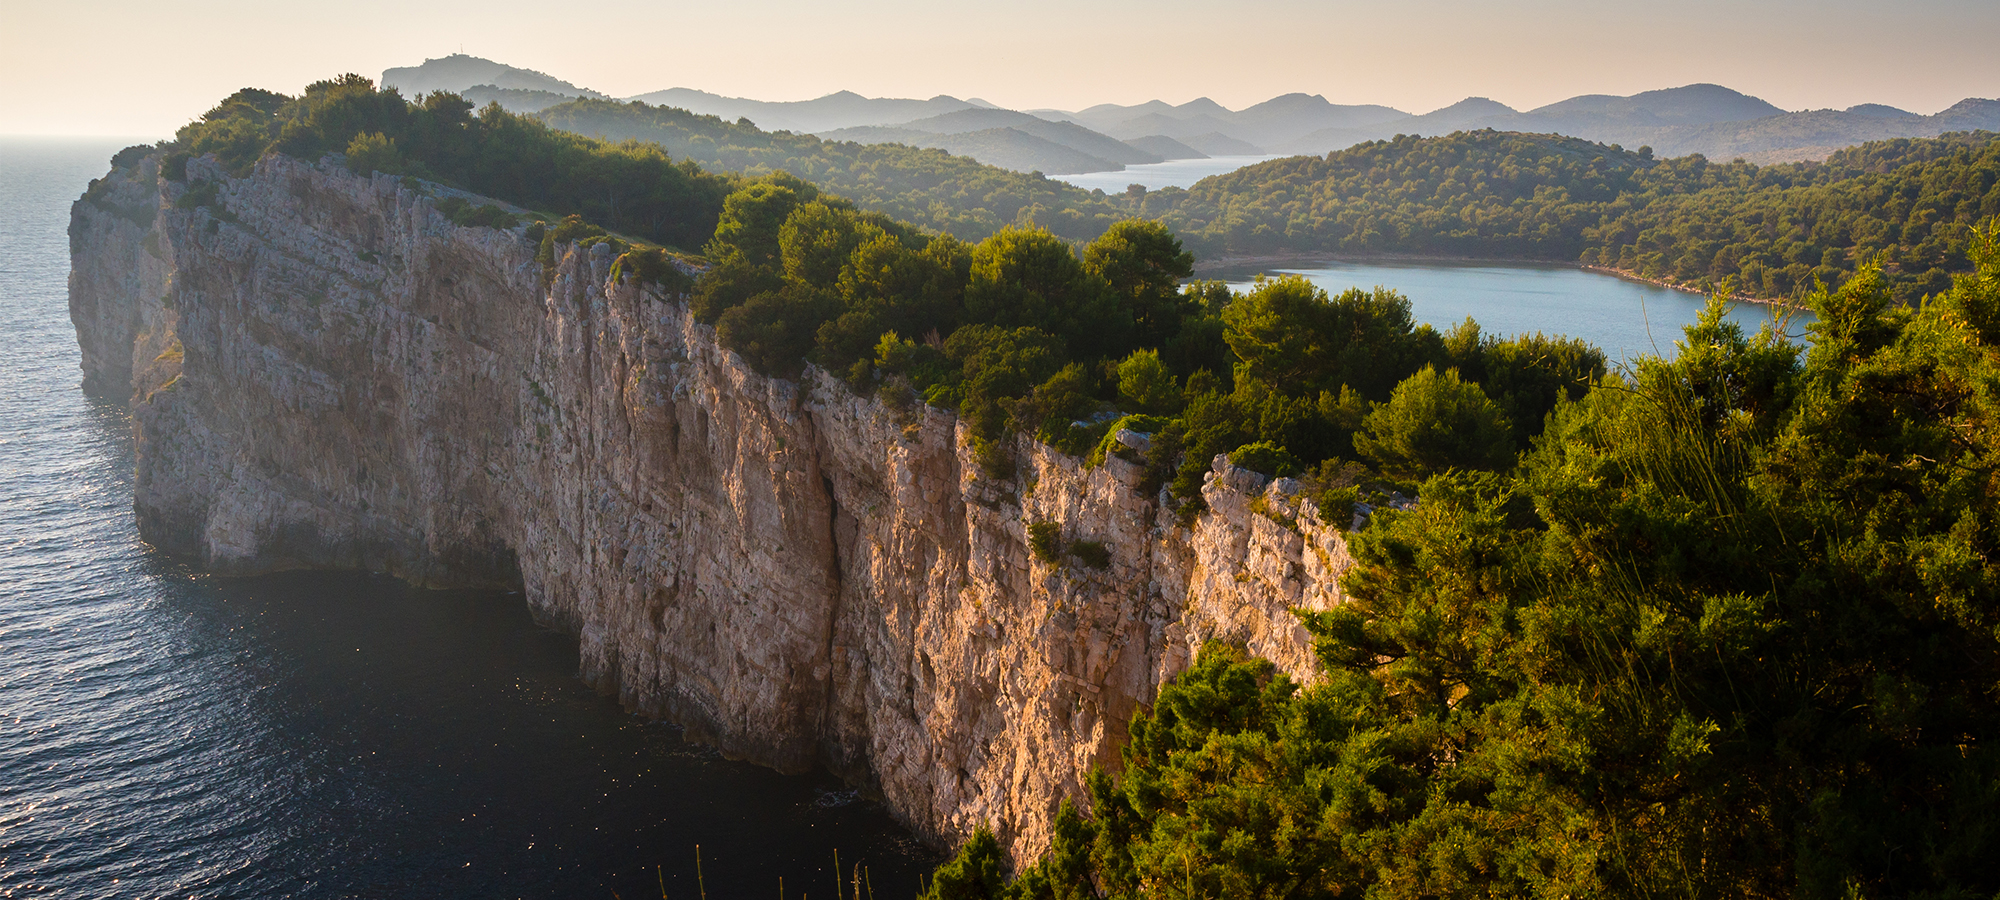 Najbolja mjesta za penjanje po stijenama u Dalmaciji